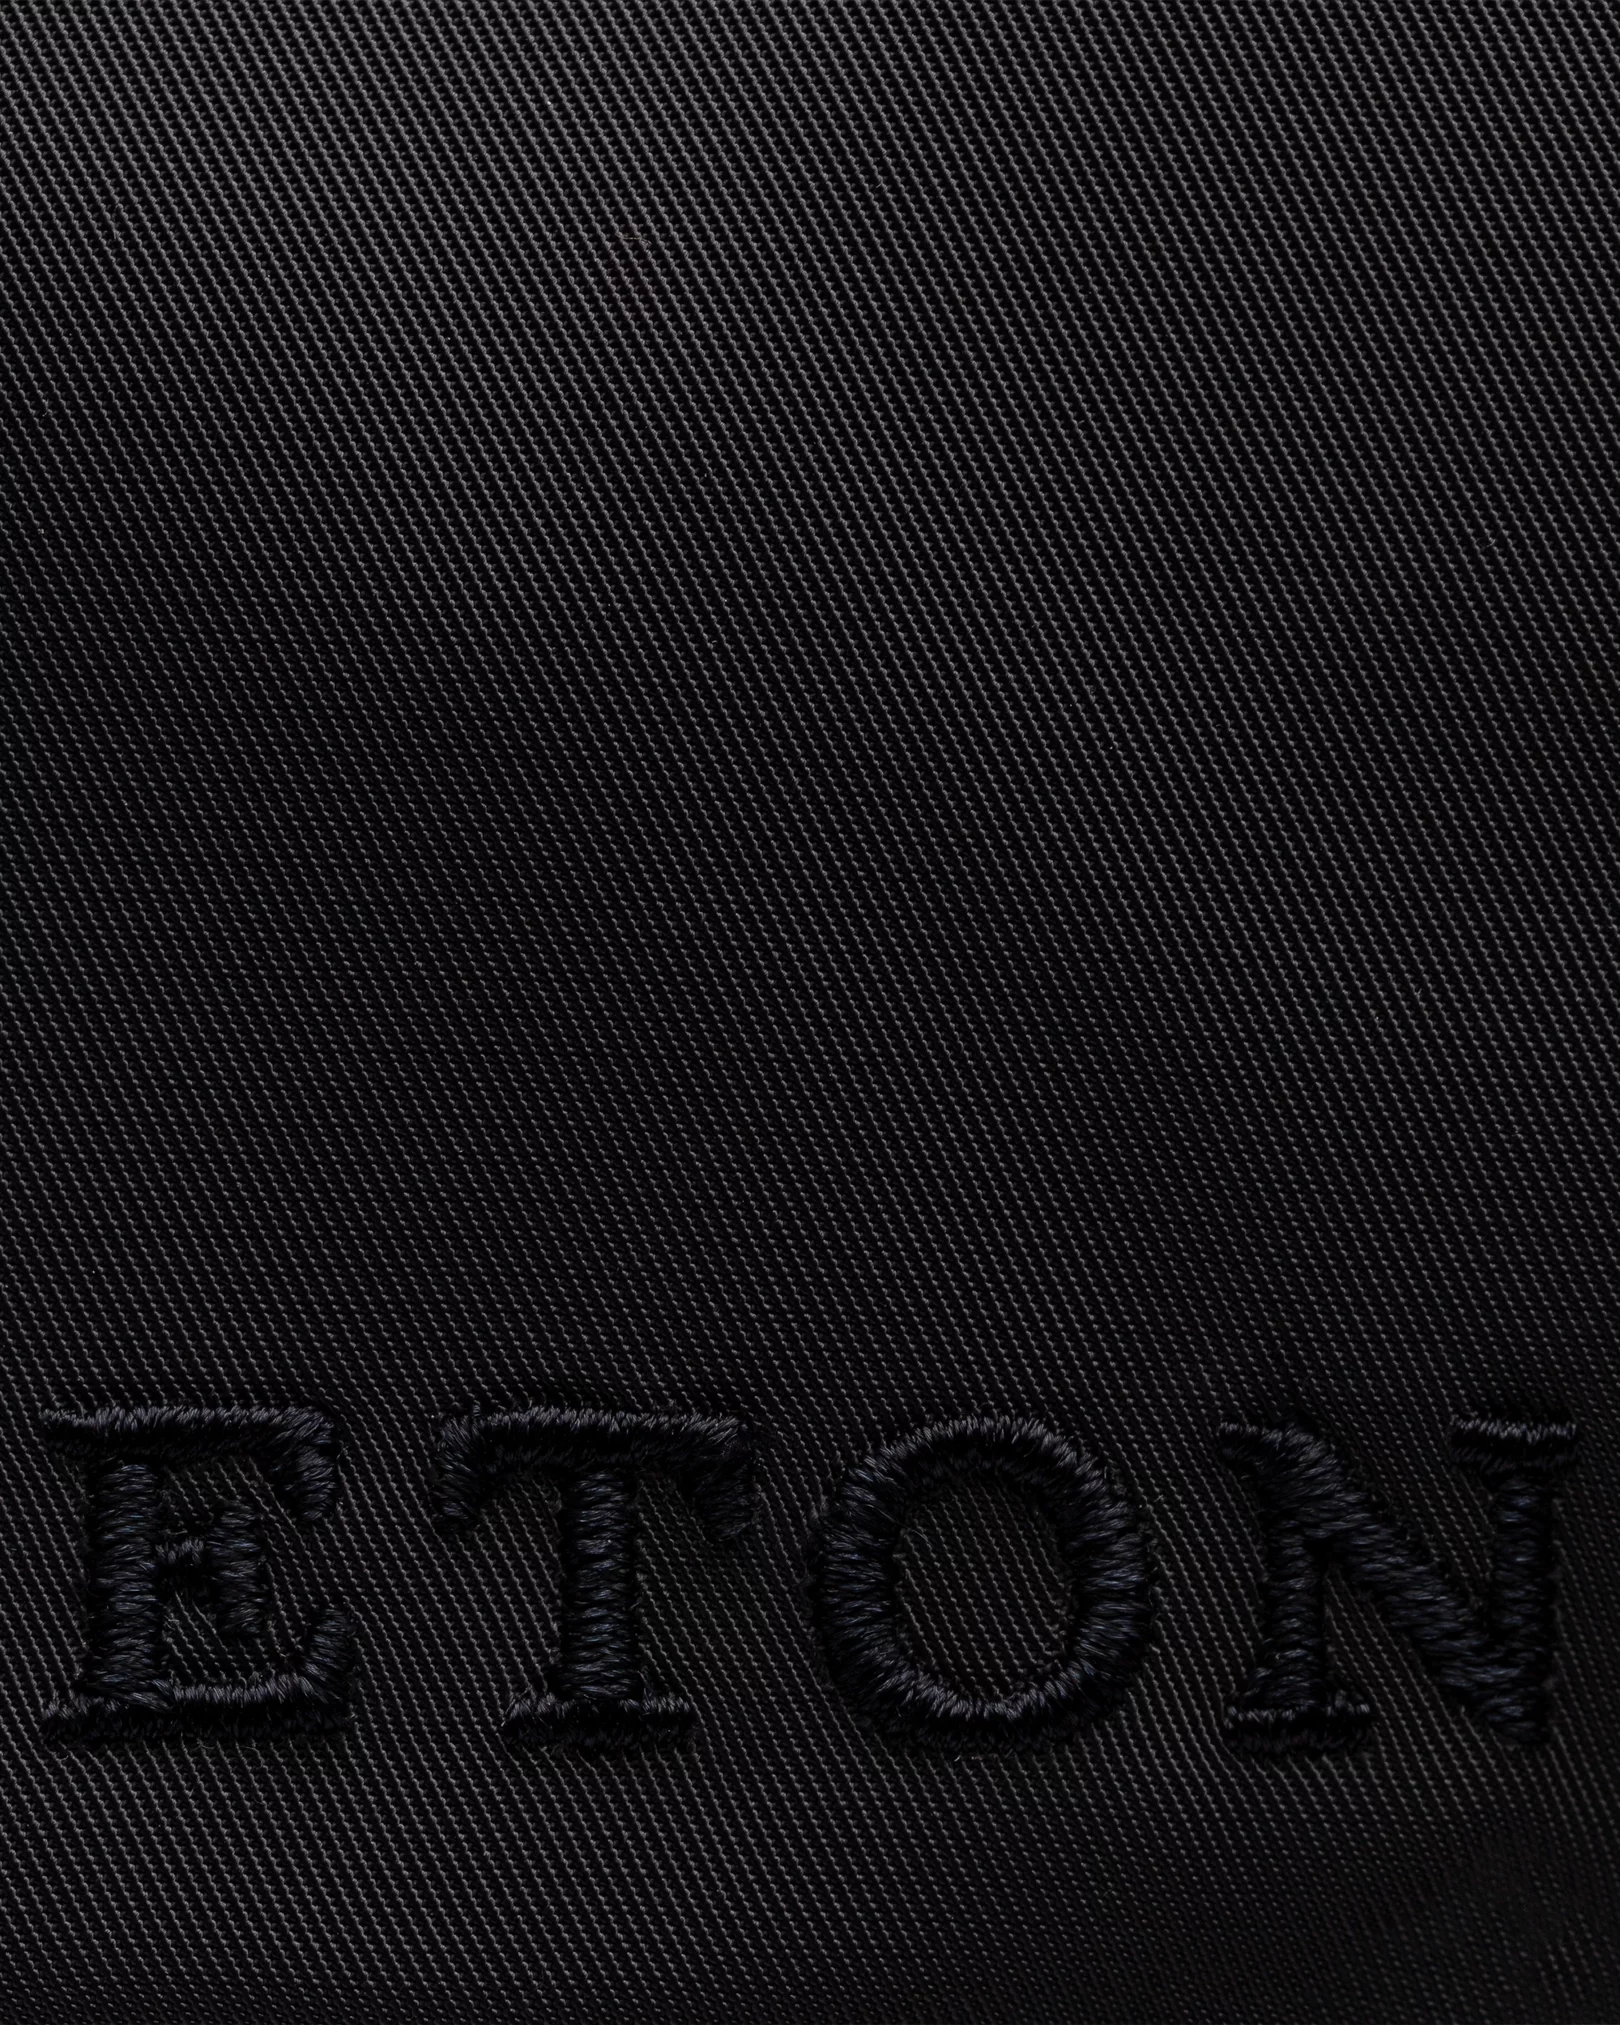 Eton - gray nylon cap